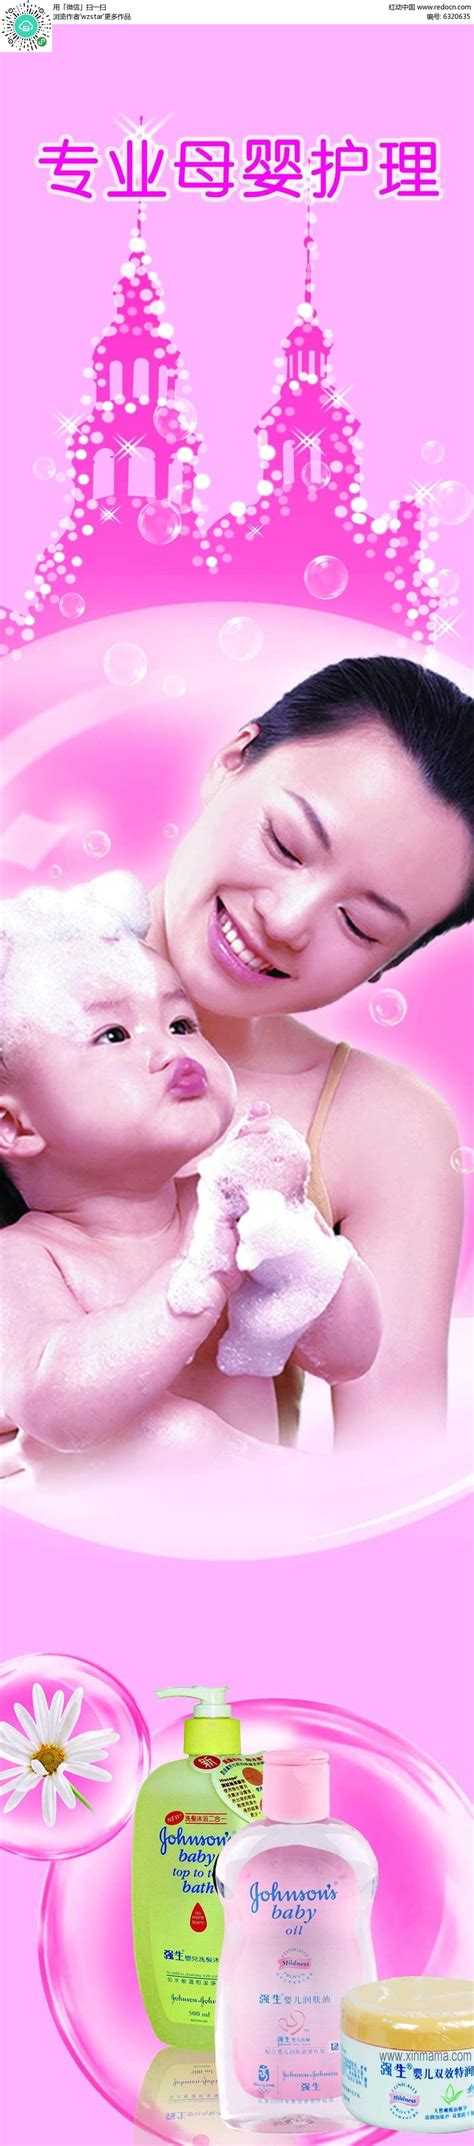 北京美婴宝贝母婴护理有限公司_育儿嫂服务_美婴宝贝